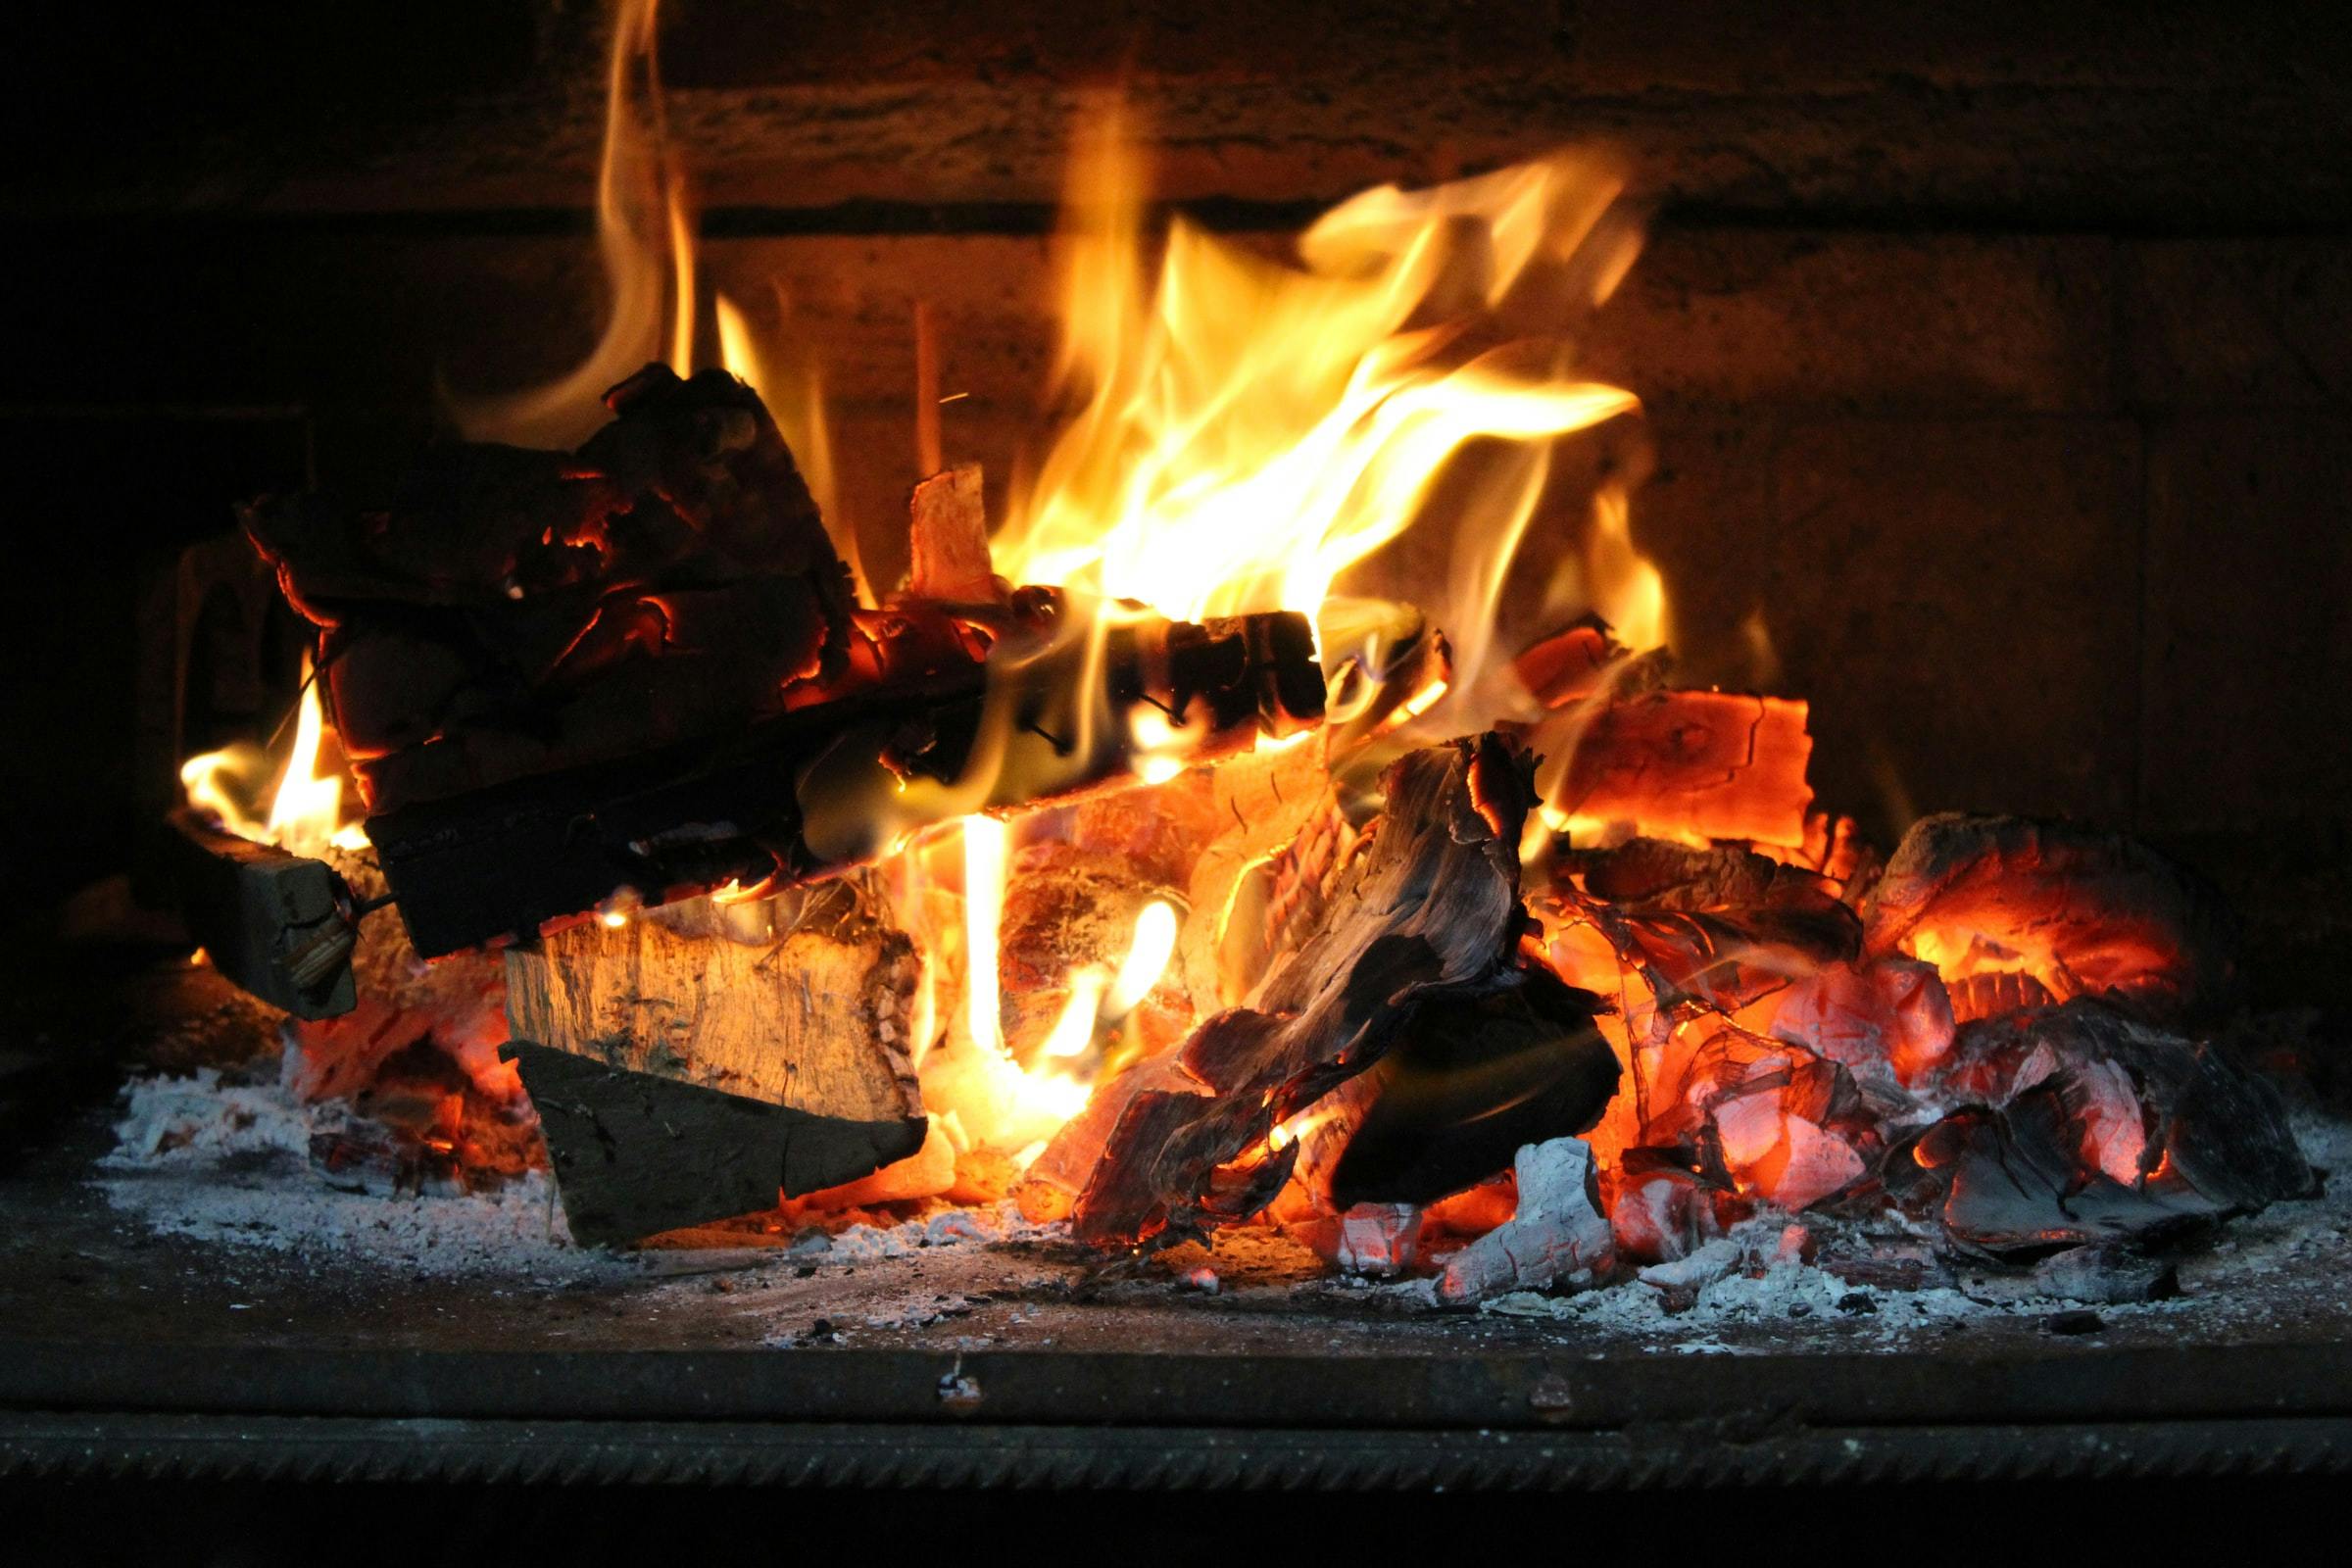 Ramonage de cheminée et assurance habitation — MaxiAssur